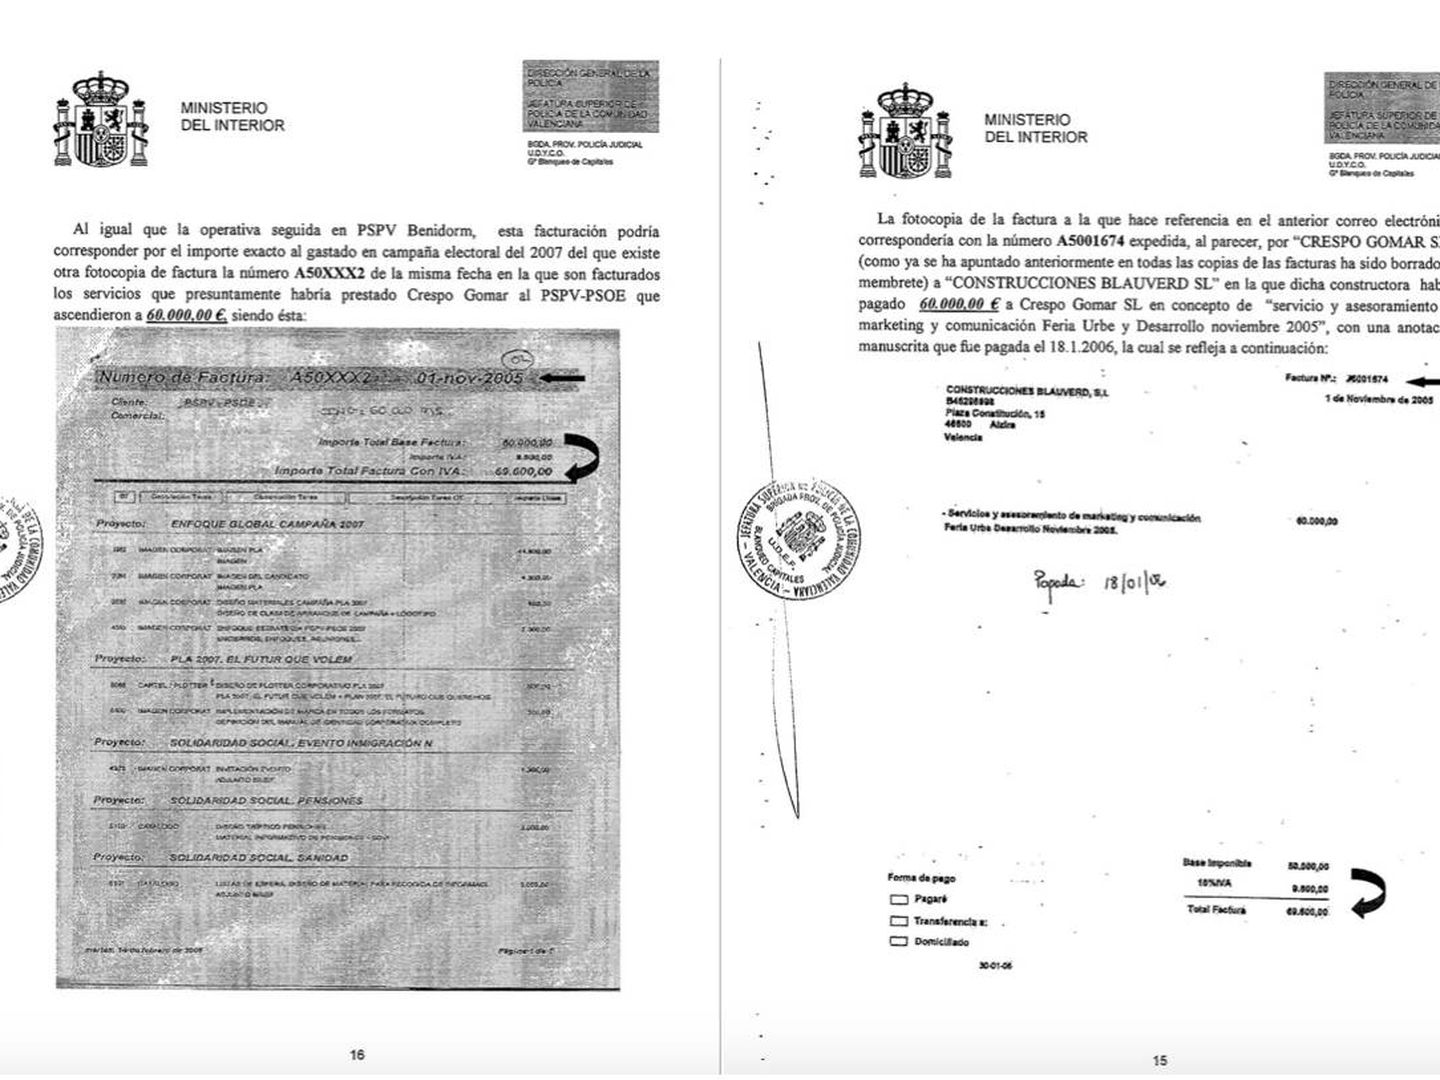 Ejemplo de doble facturación de Crespo Gomar, con la constructora Blauverd y relación de actos del PSPV-PSOE por el mismo importe. 